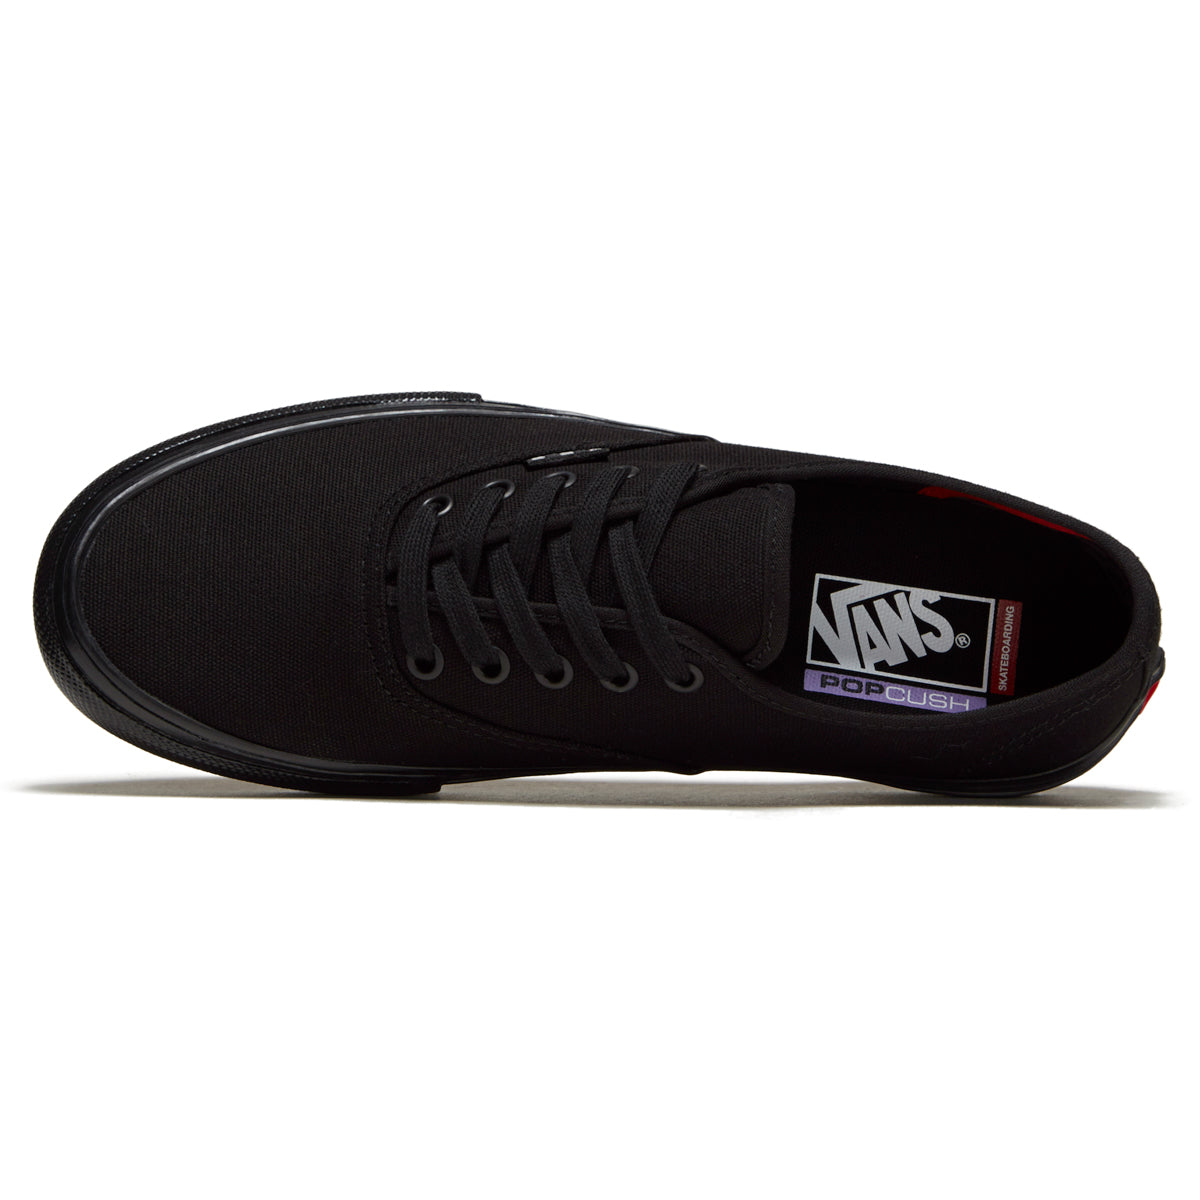 Vans Skate Authentic Shoes - Black/Black image 3